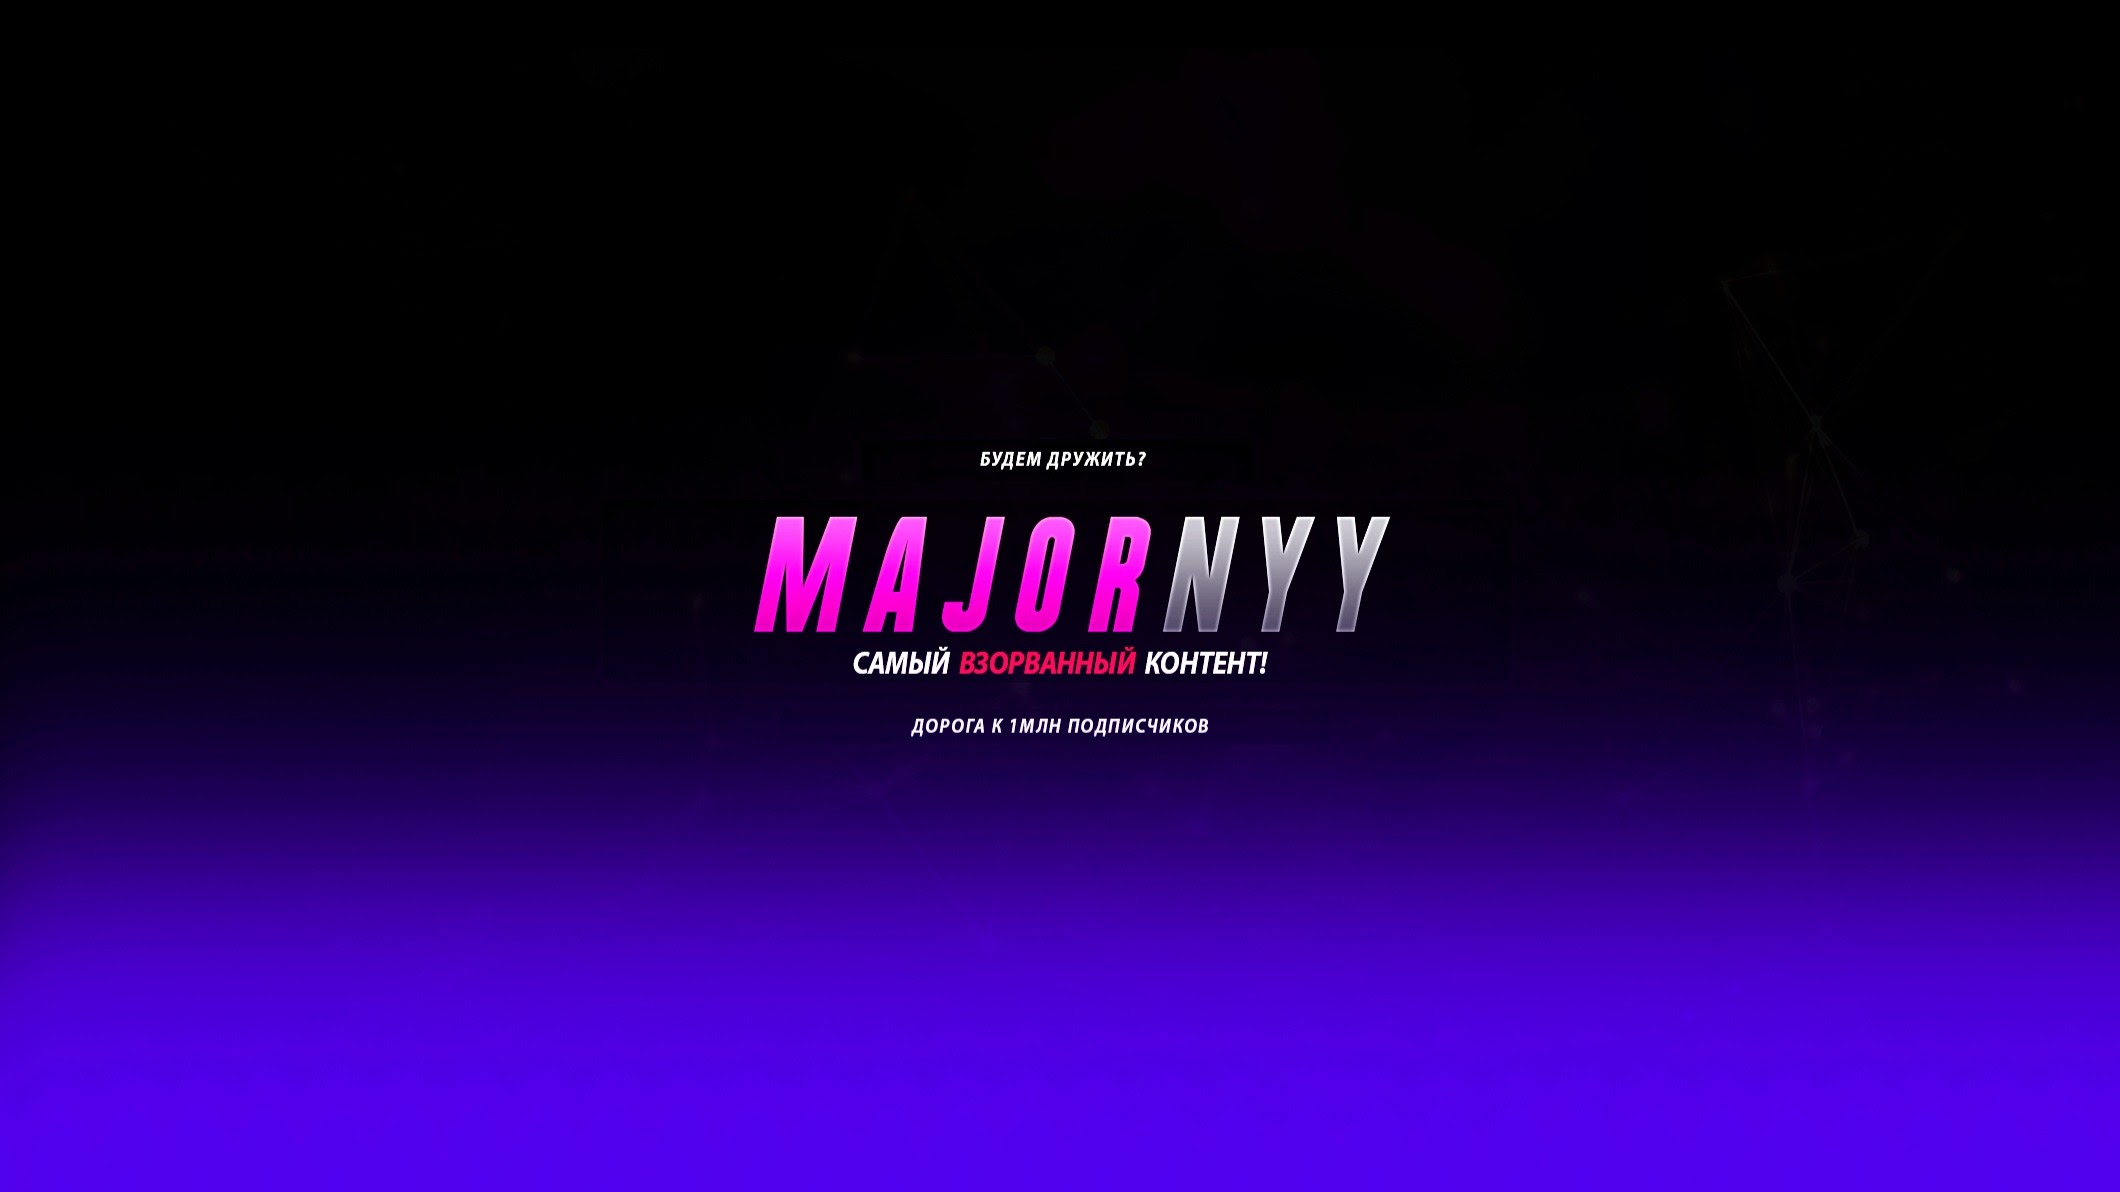 Majornyy